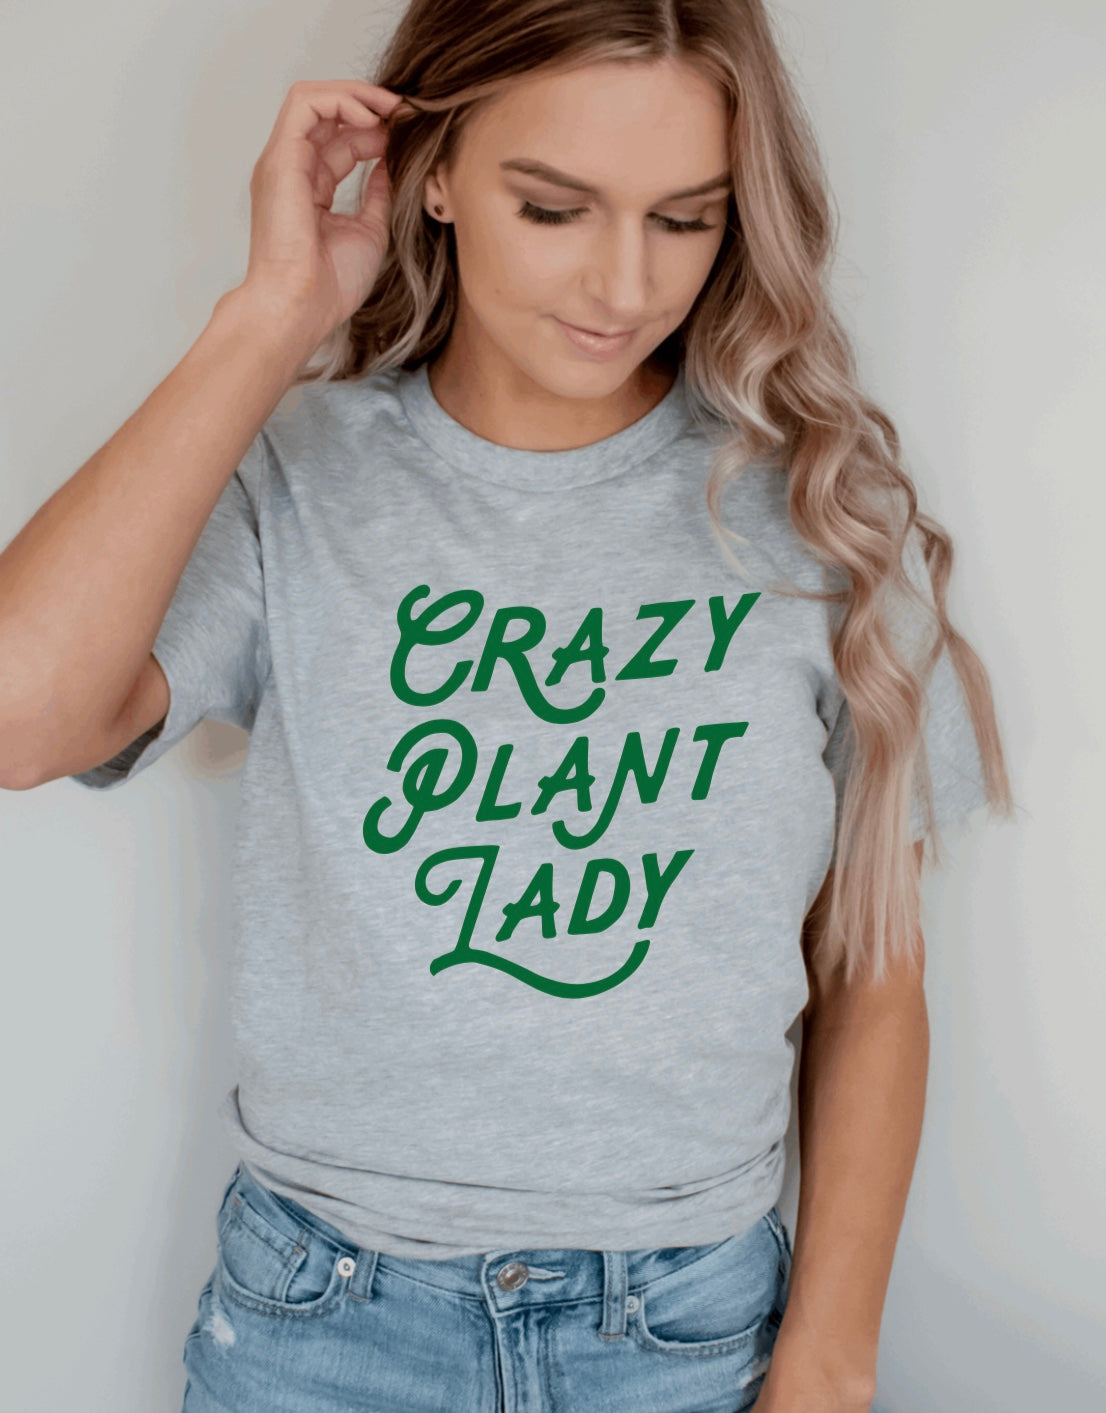 Crazy Plant lady t-shirt 